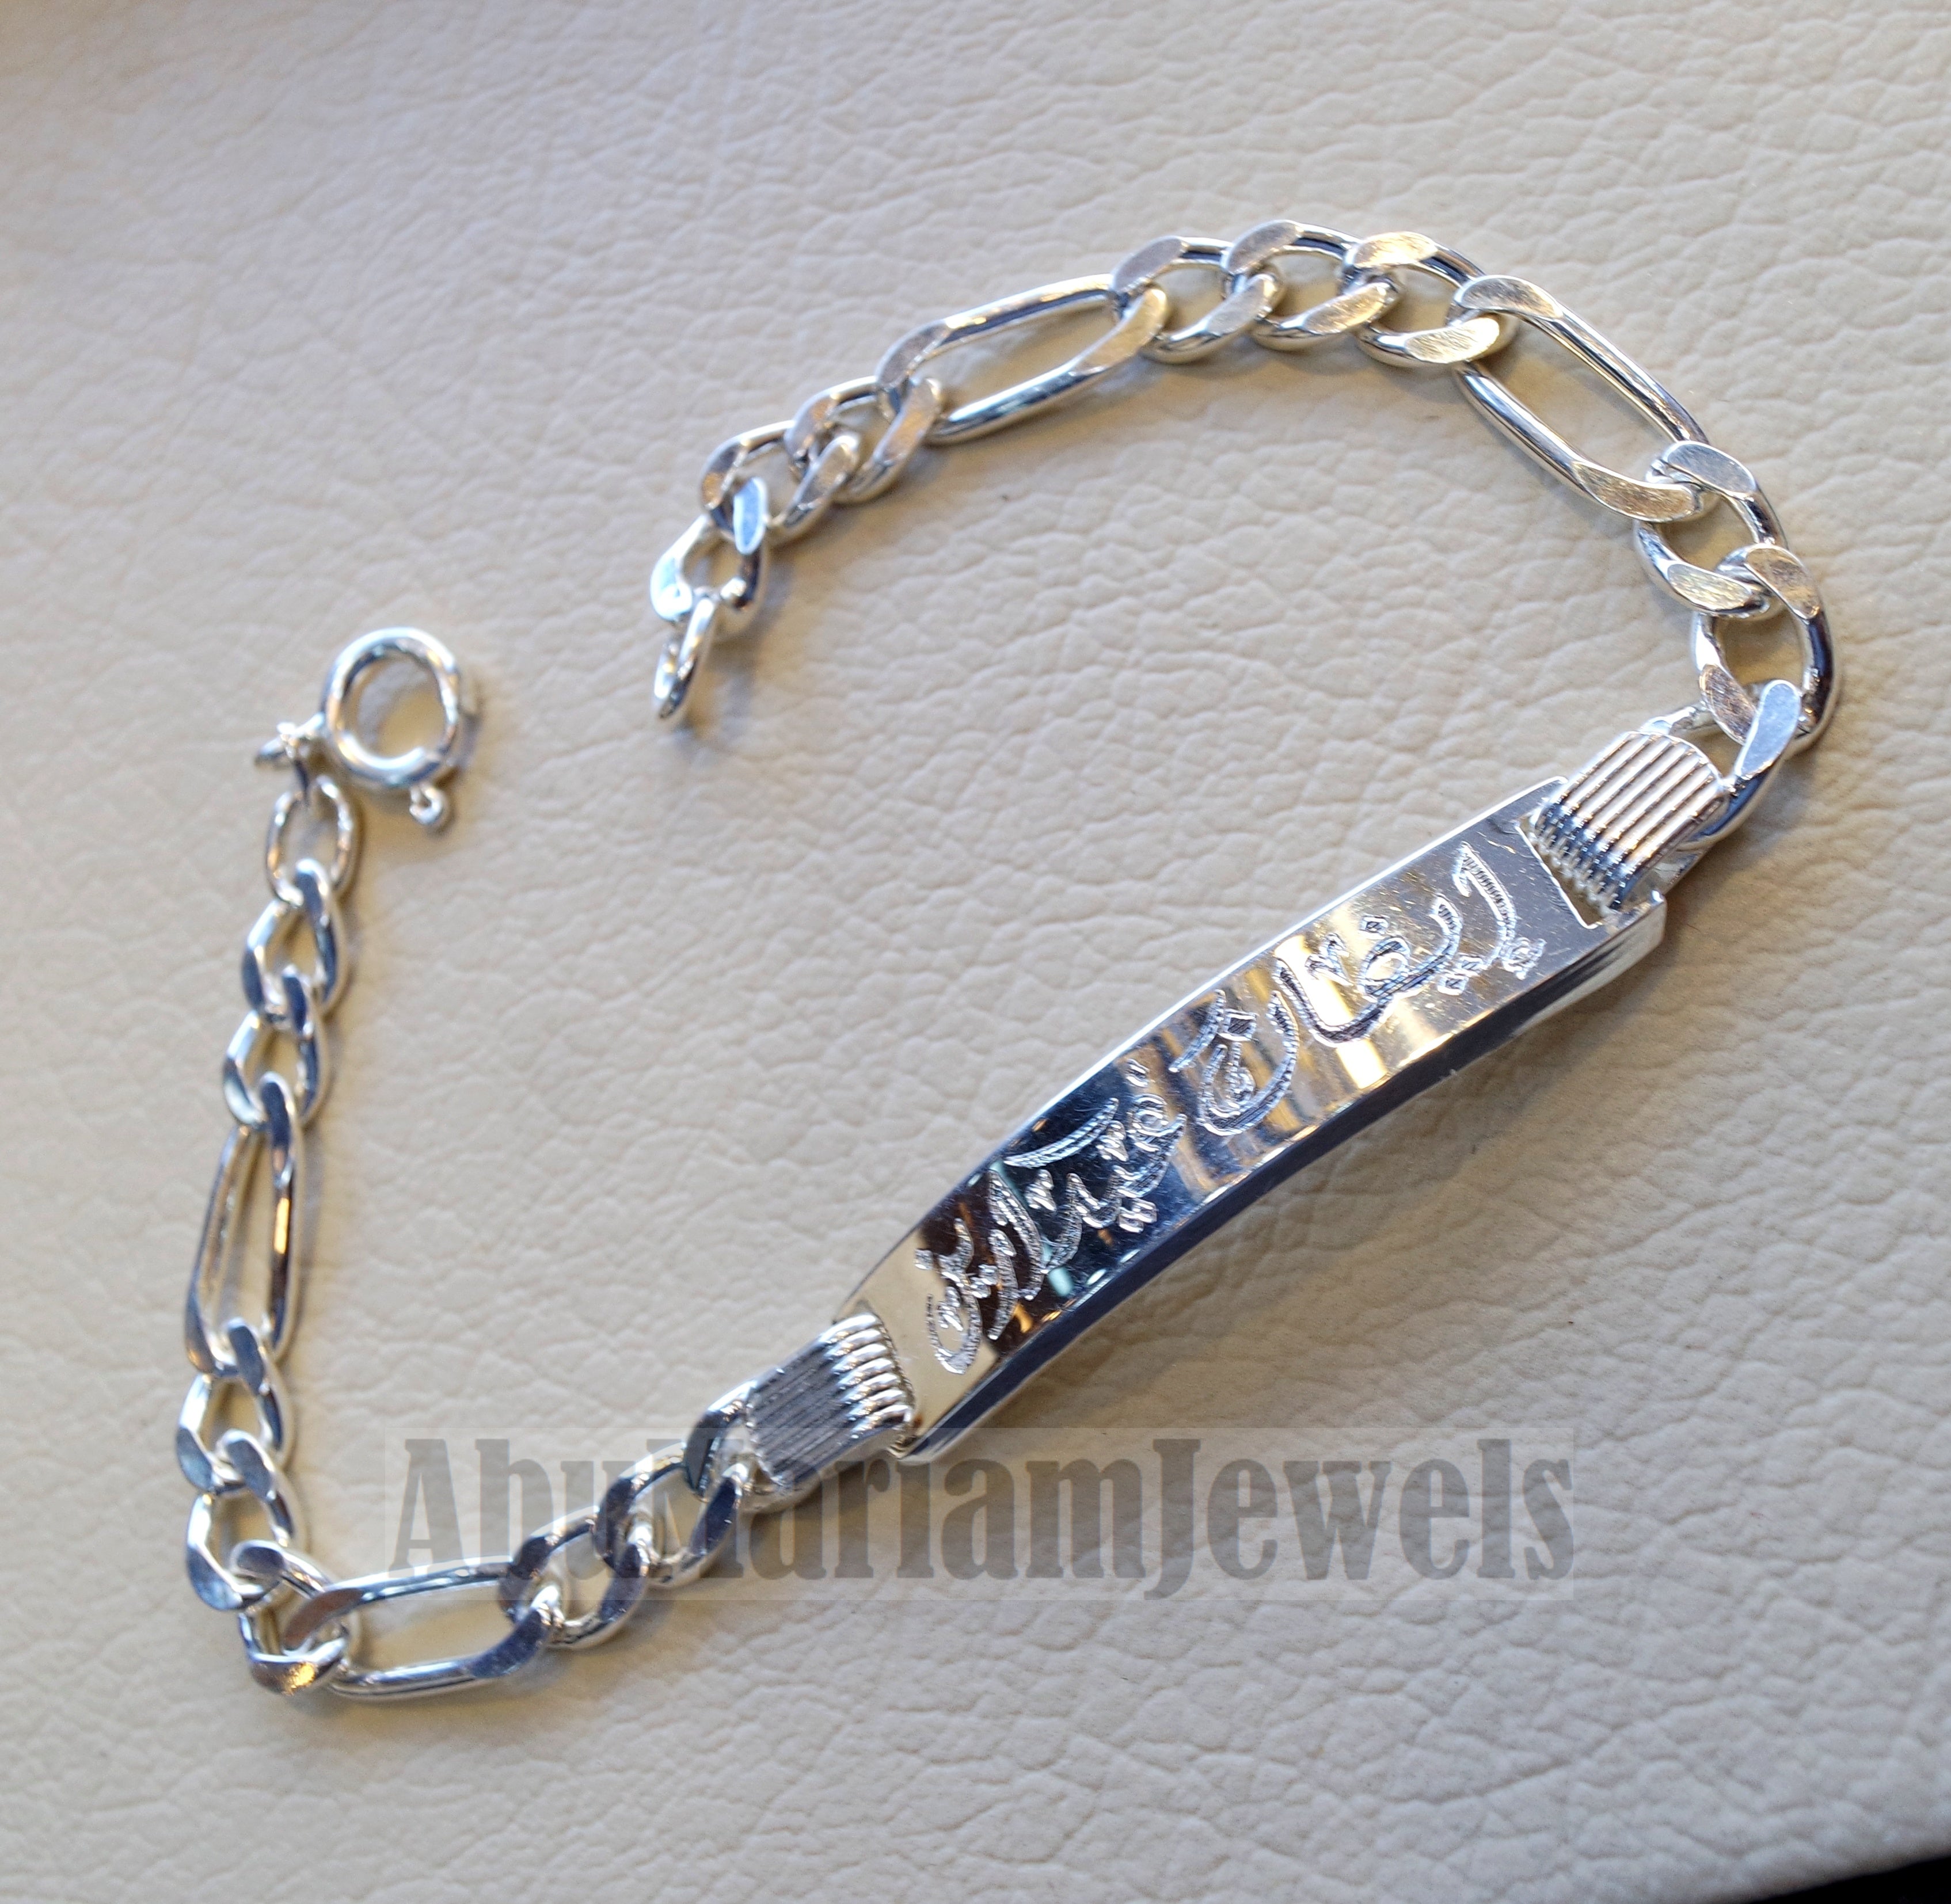 Silver Bracelet For Men's | Silveradda